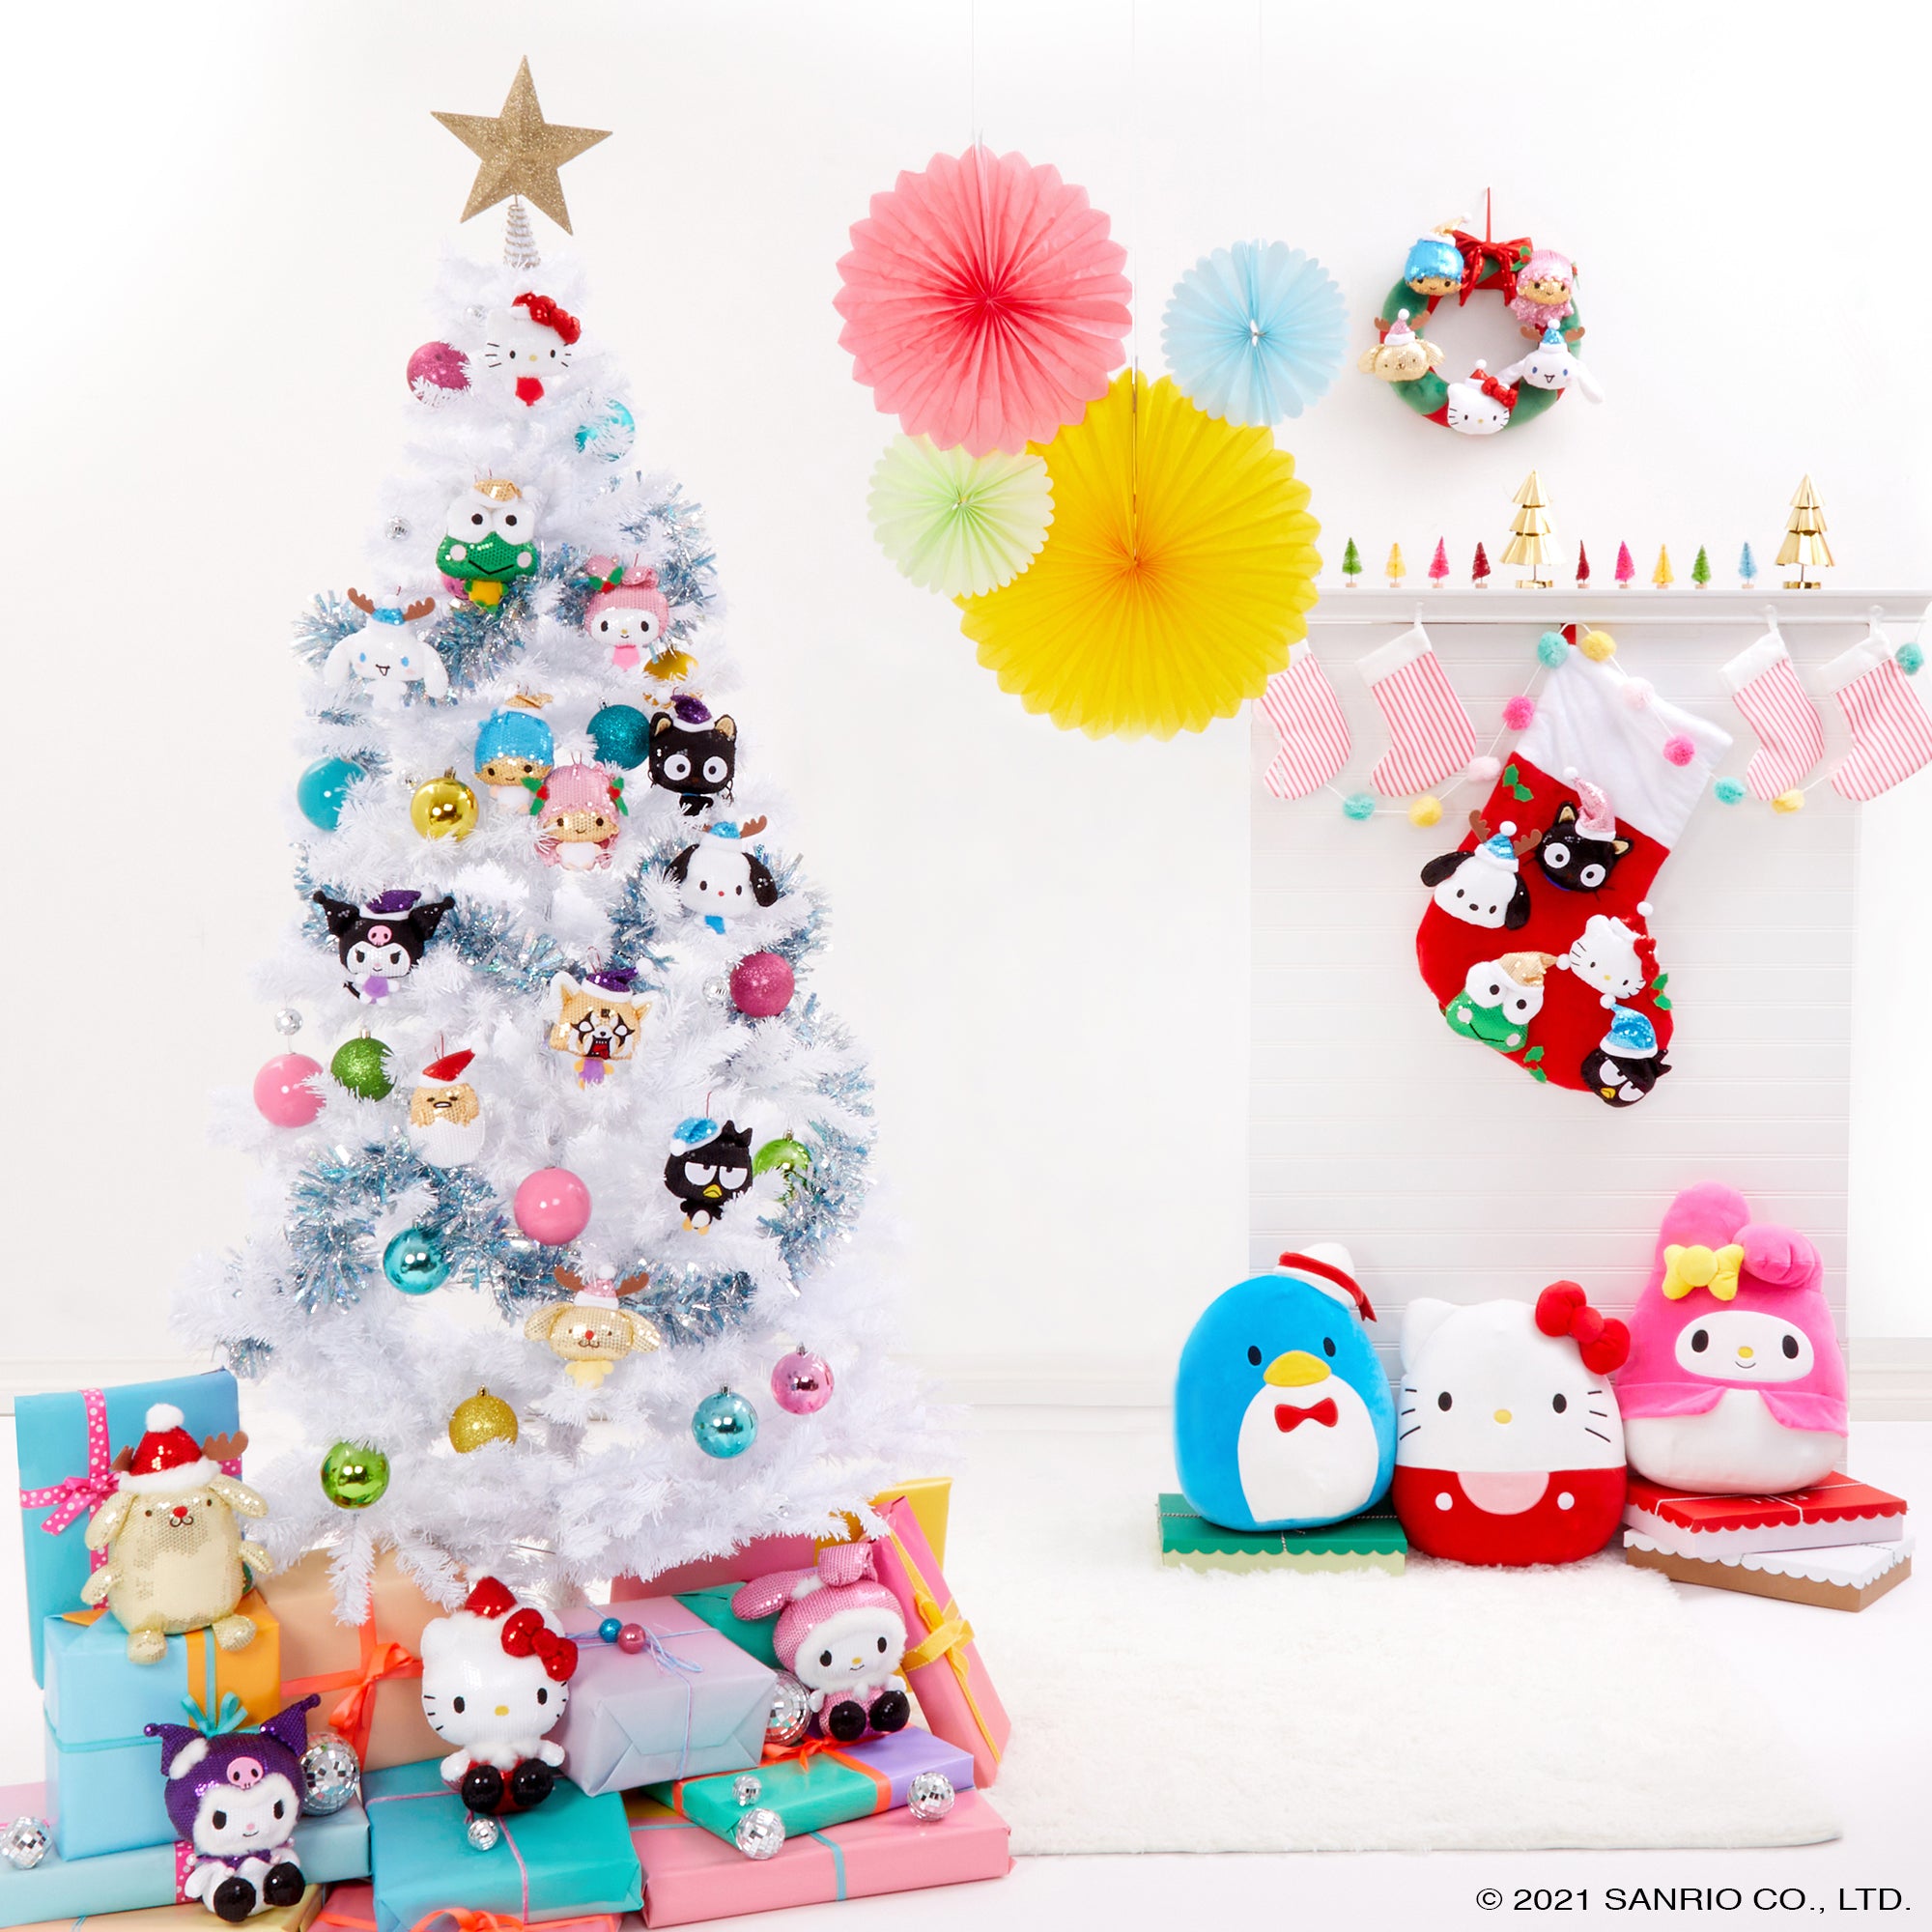 Supercute Hello Kitty Holiday Decorations